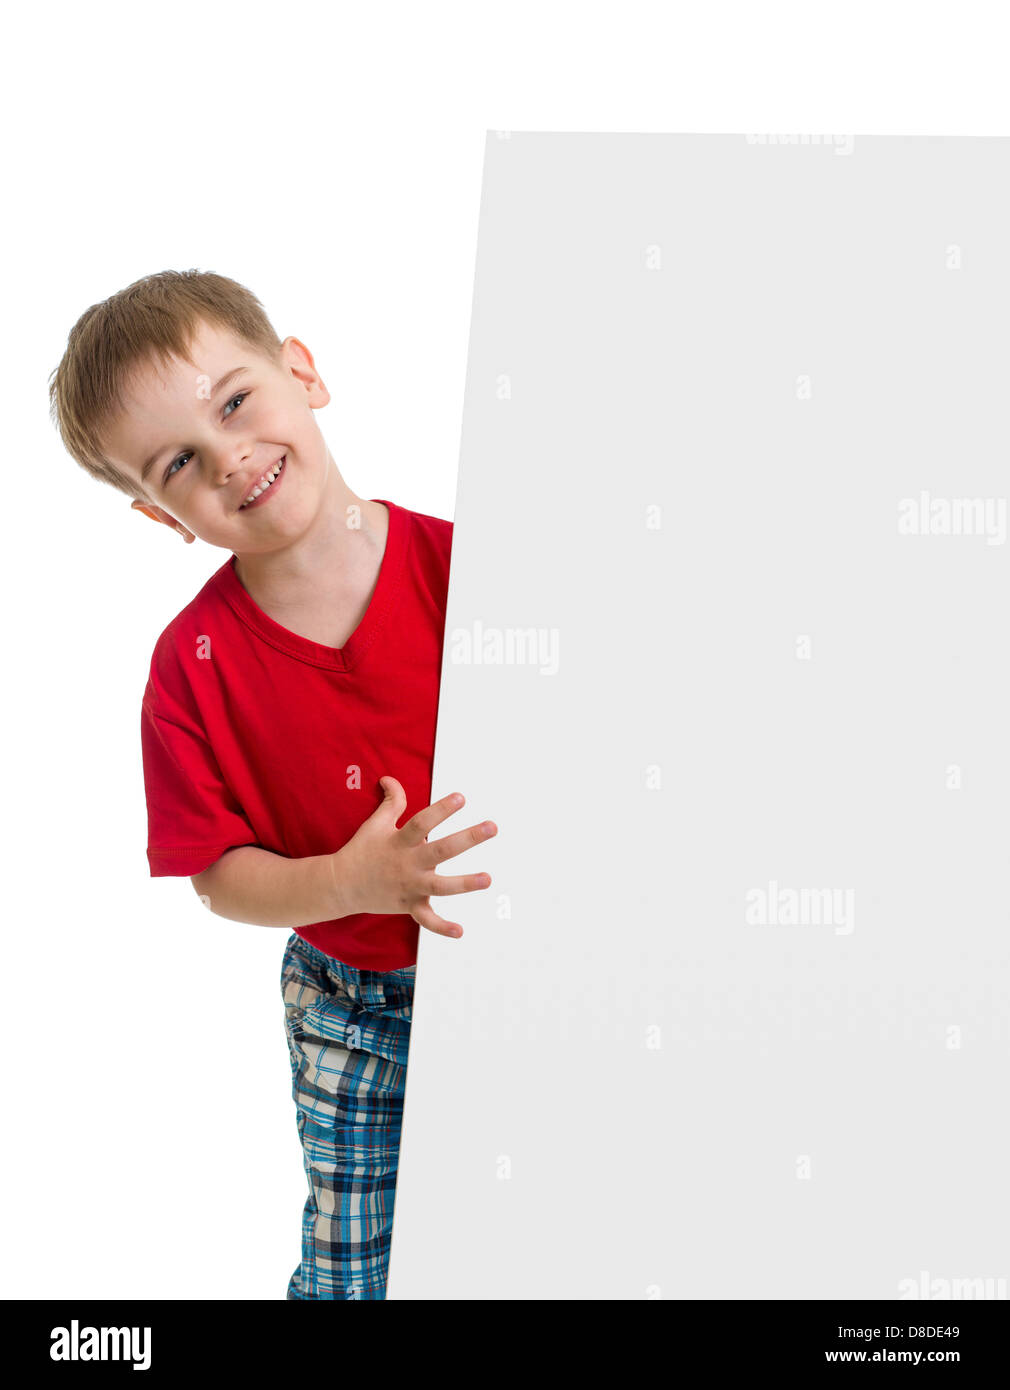 Happy kid derrière ouverture vierge pour la publicité Banque D'Images